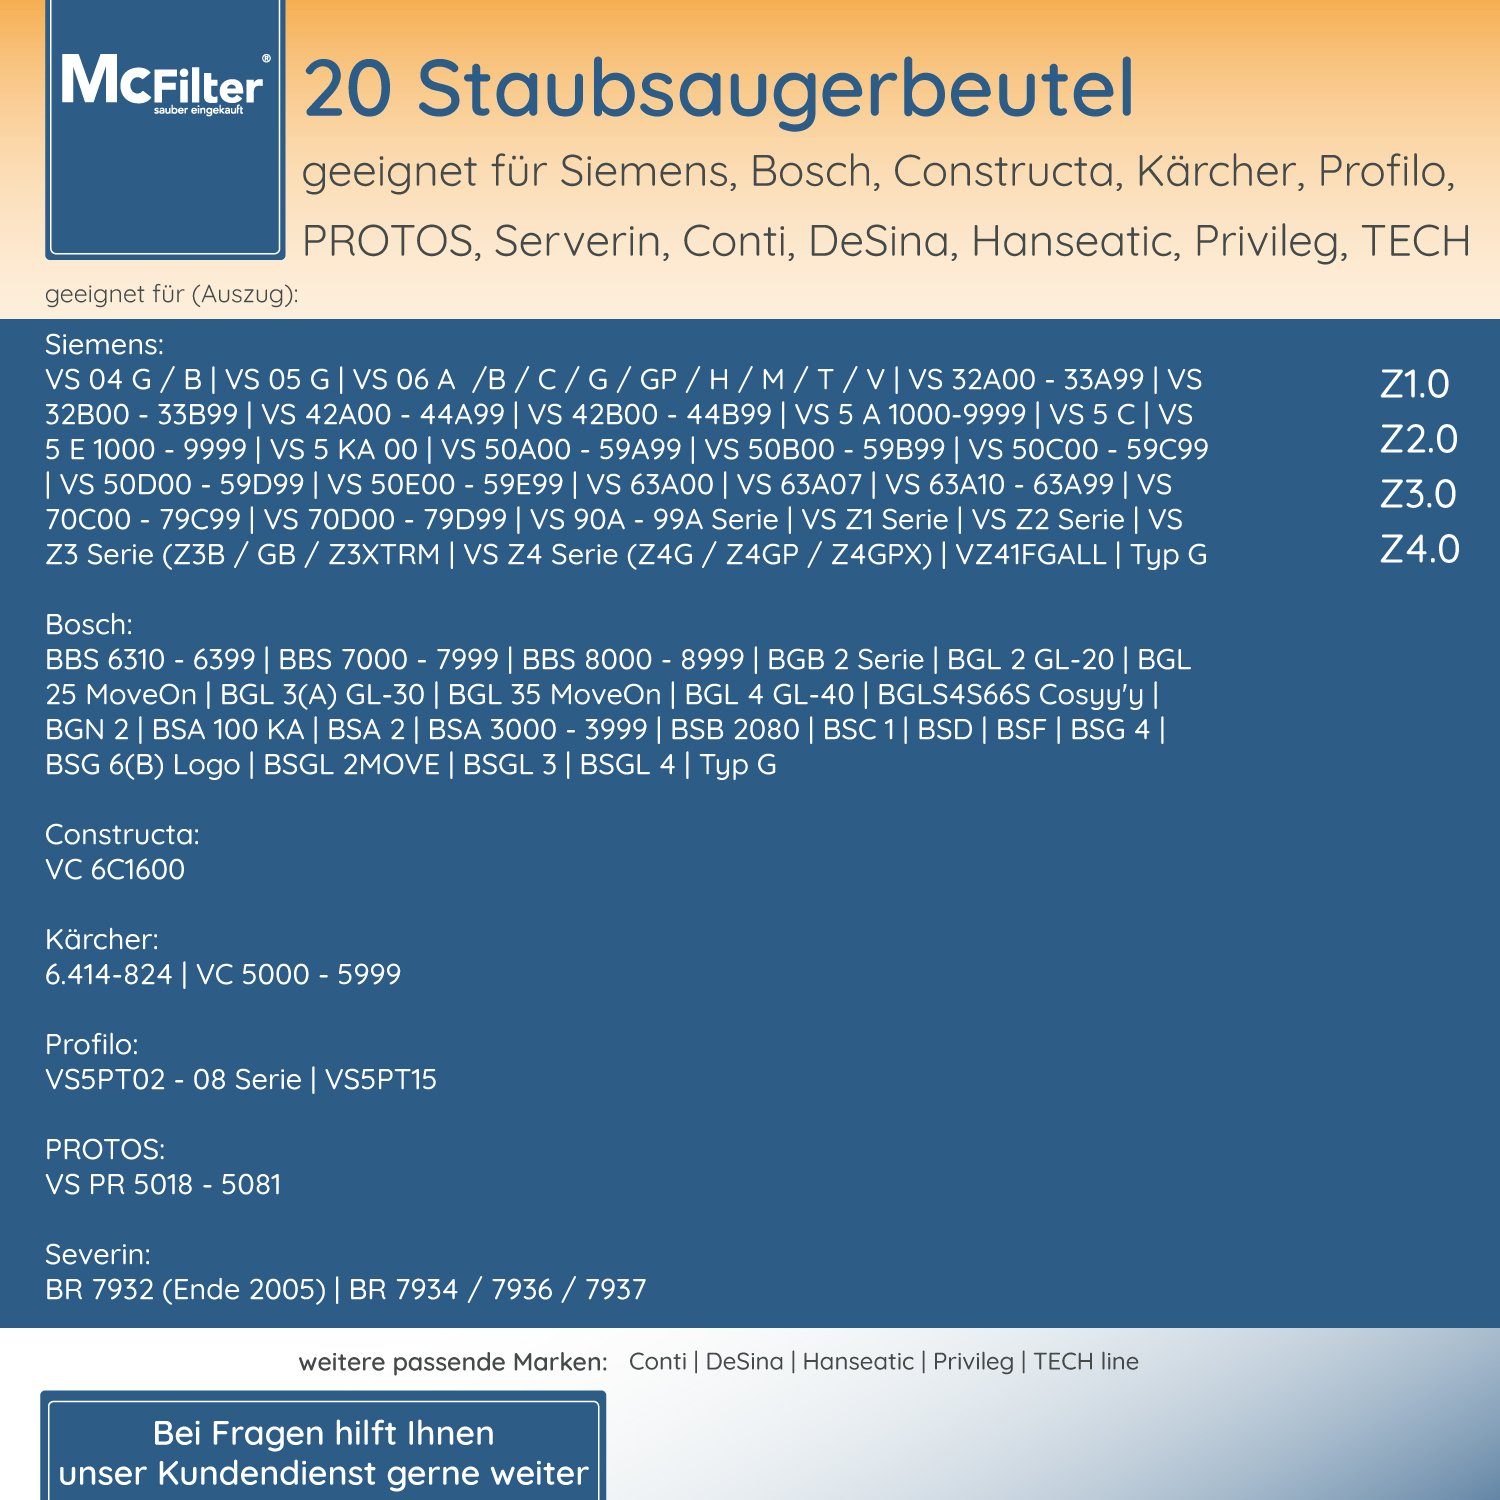 McFilter Staubsaugerbeutel geeignet für St., wie BBZ41FGALL, Hygieneverschluss, Staubsauger, Staubbeutel BGL6TSIL für Bosch, 20 inkl. 5-lagiger Filter passend mit